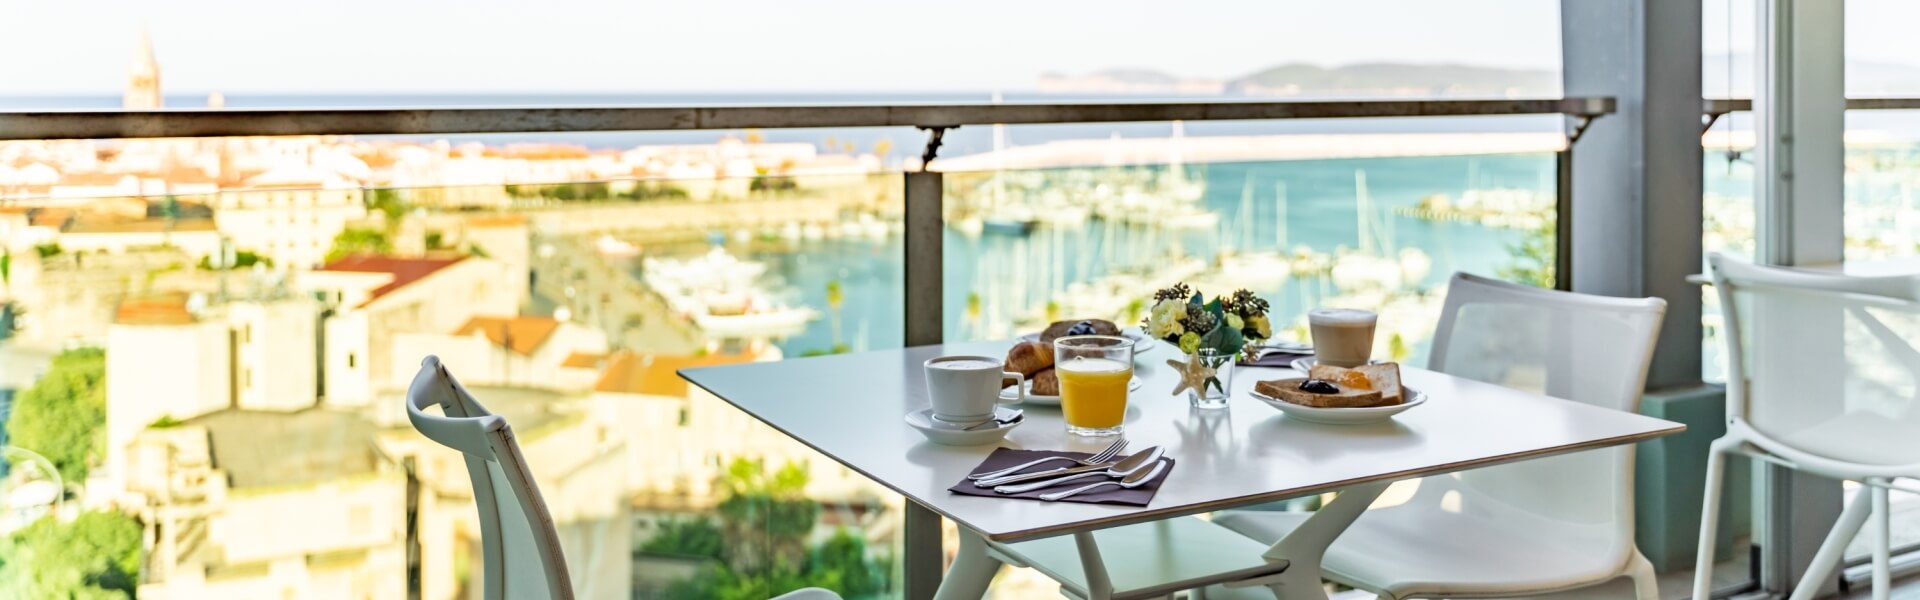 Blau terrazza con tavolo colazione 